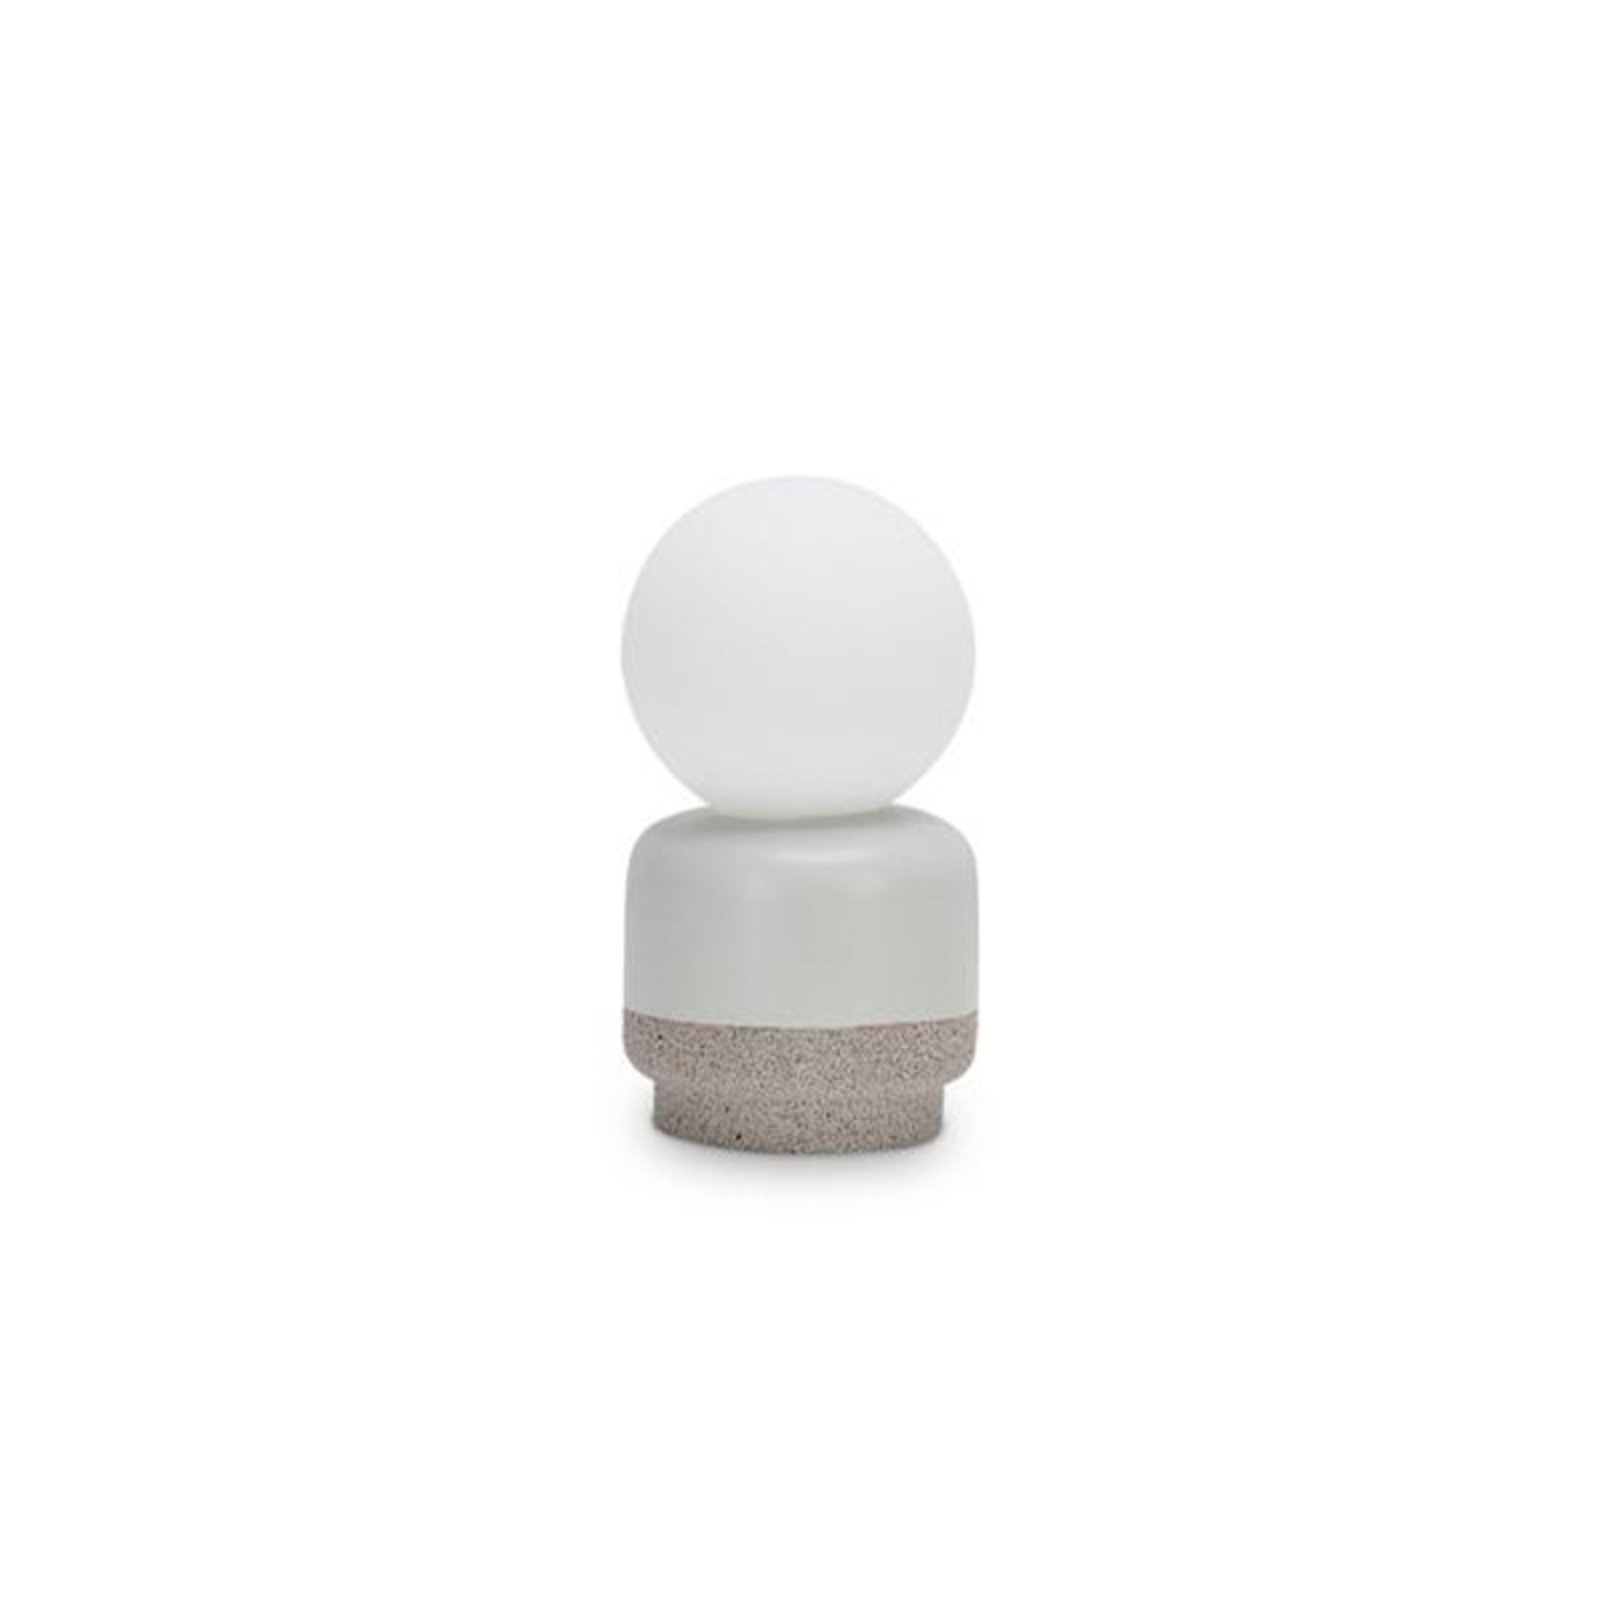 Ideal Lux Cream pöytävalaisin, korkeus 19 cm, valkoinen, kipsi, opaalilasi